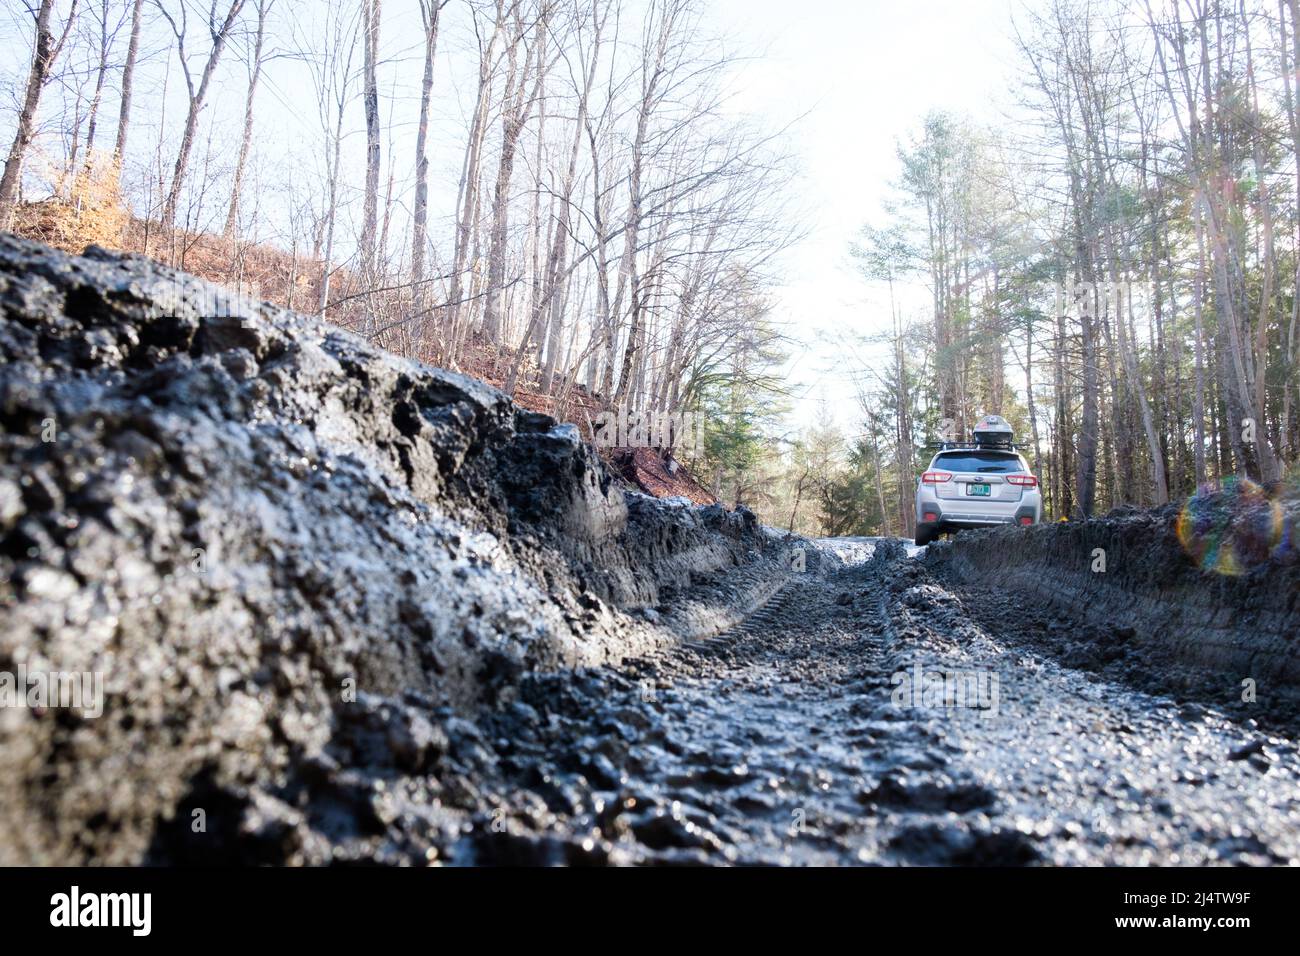 La saison de la boue, la descente des routes de terre du Vermont dans les tourbières, se produit chaque printemps, habituellement en mars et avril. Etat du Vermont, Etats-Unis. Banque D'Images